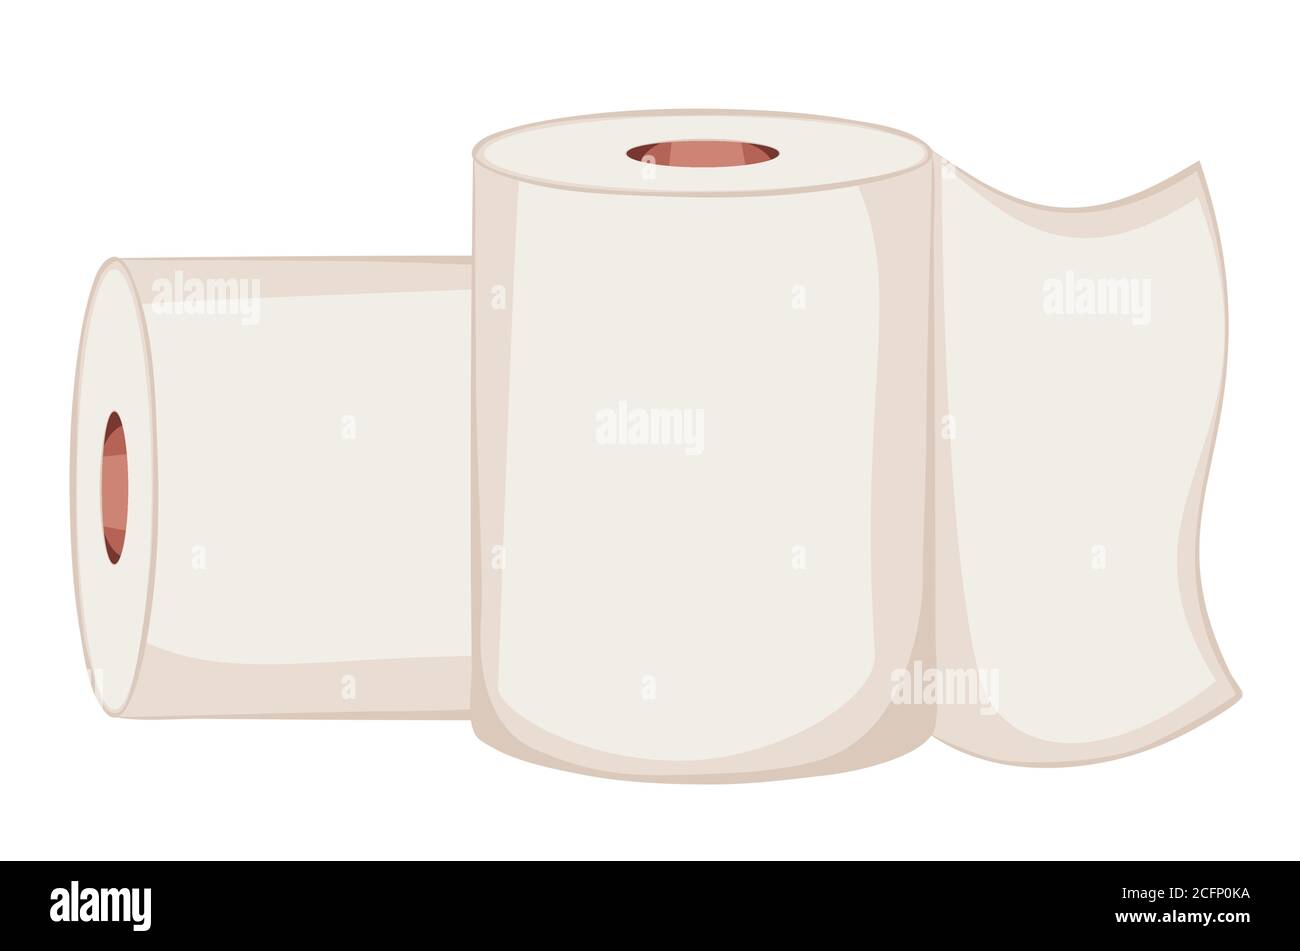 Toilettenpapier Rolle Einfache Illustration auf weißem Hintergrund. Stock Vektor